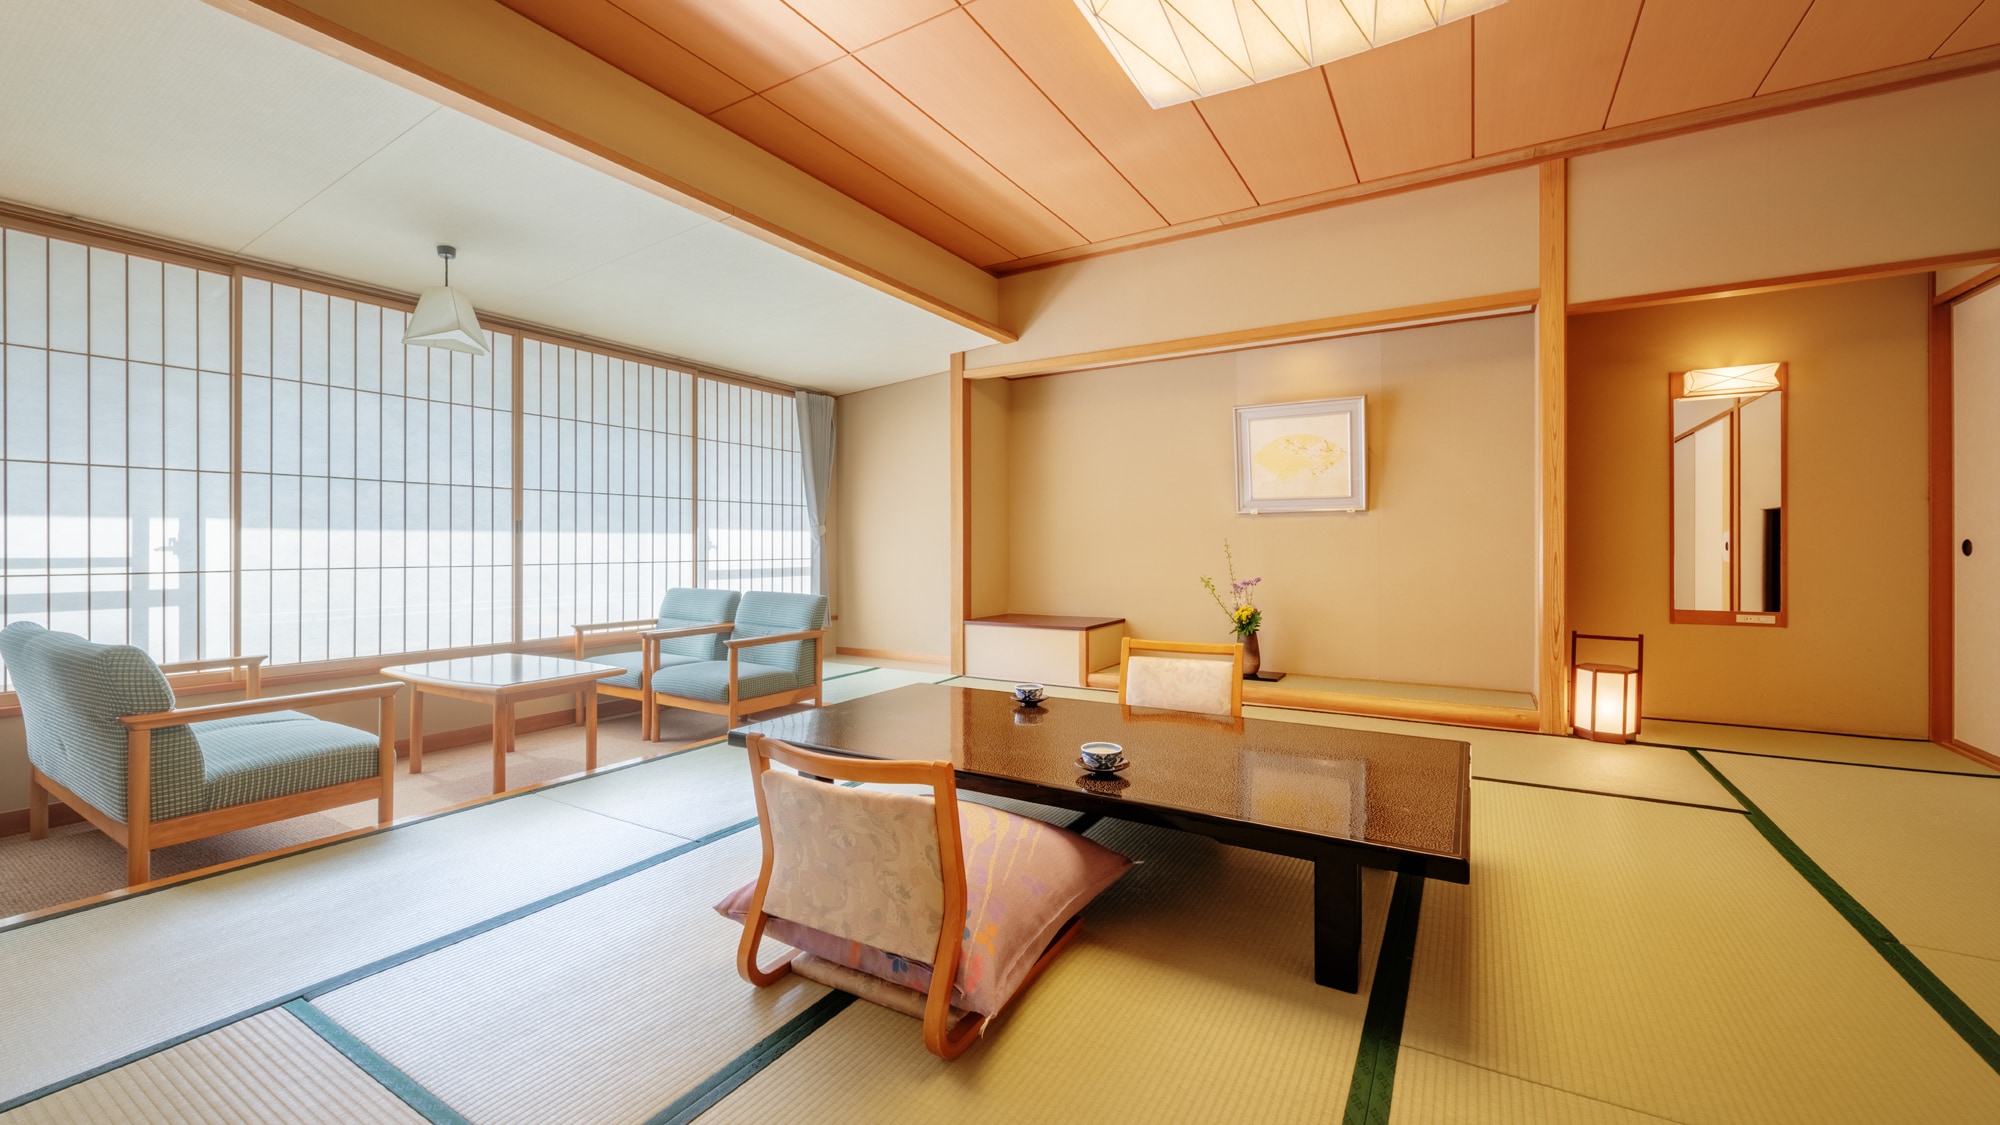 ◆ Hanafukan <Japanese-style room 12.5 tatami mats>